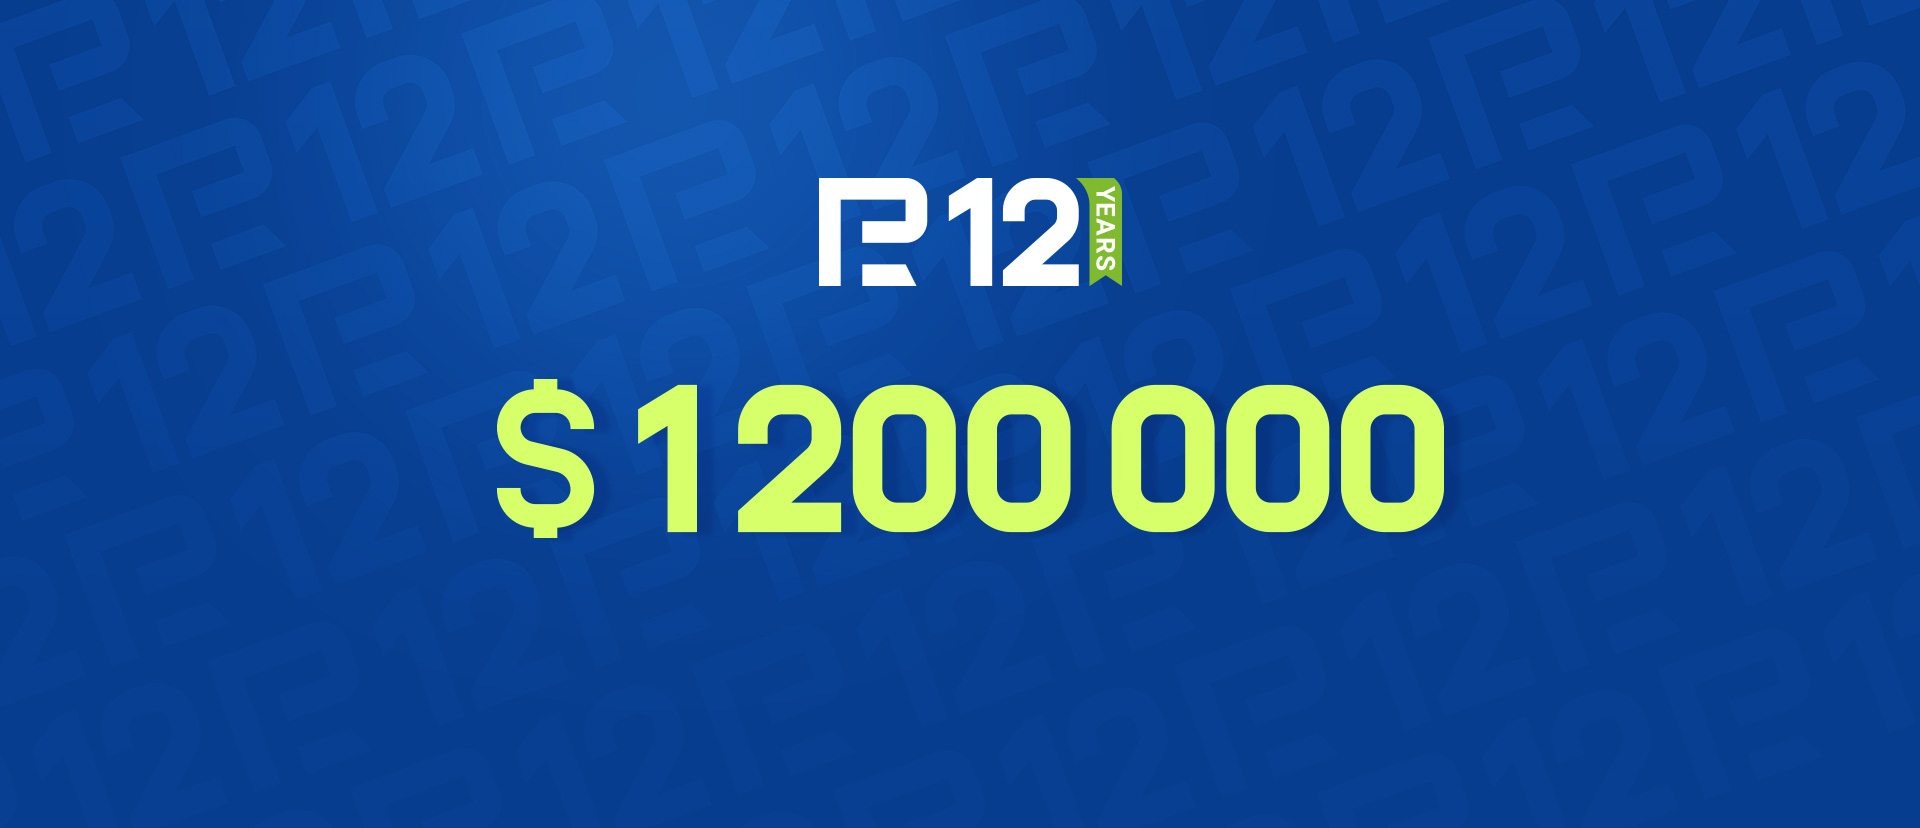 Khuyến mãi với Giải thưởng trị giá 1,200,000 đô la của RoboForex. Tham gia và chiến thắng!